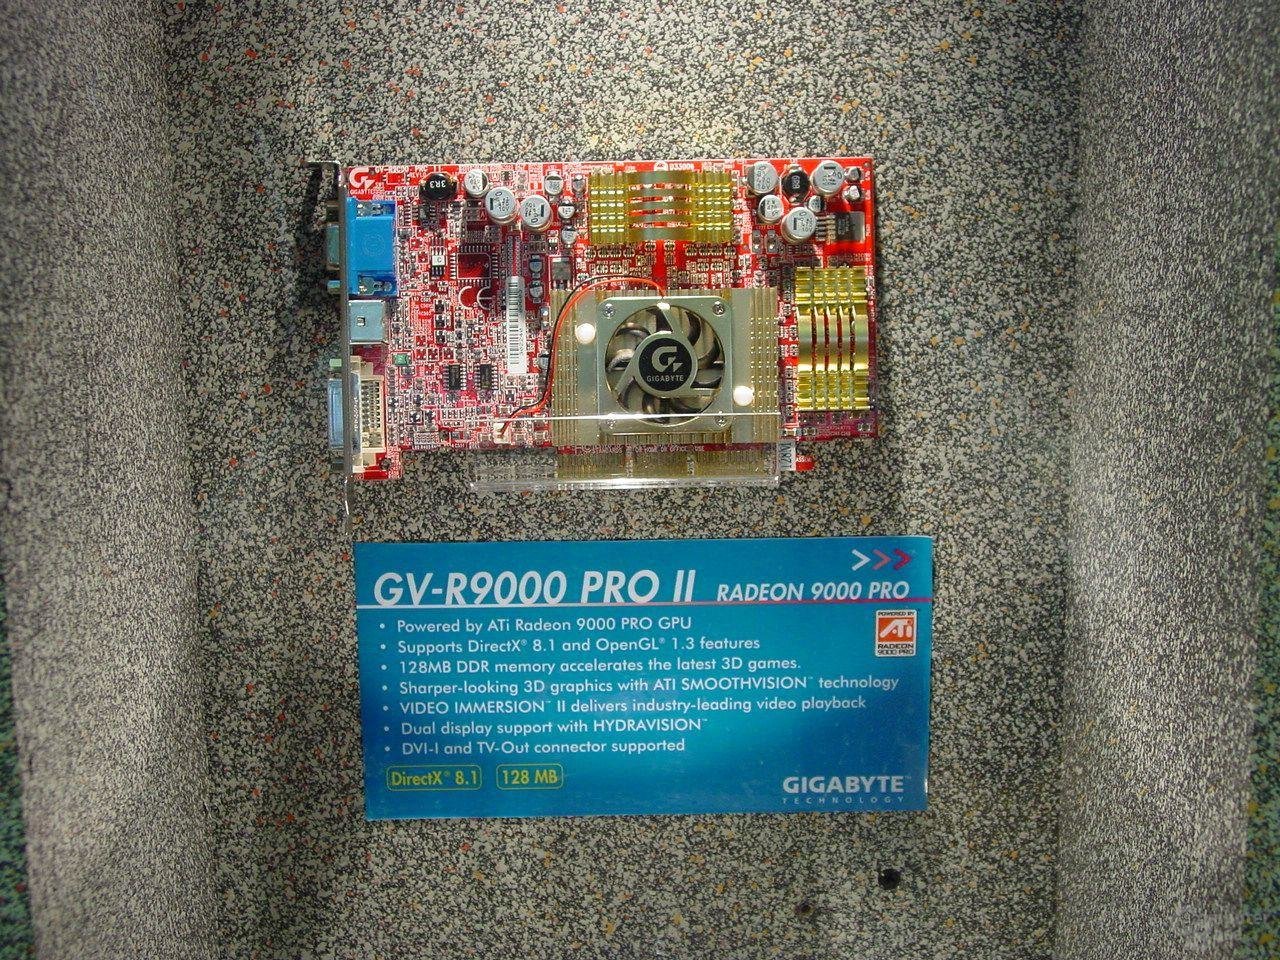 Radeon 9000 Pro